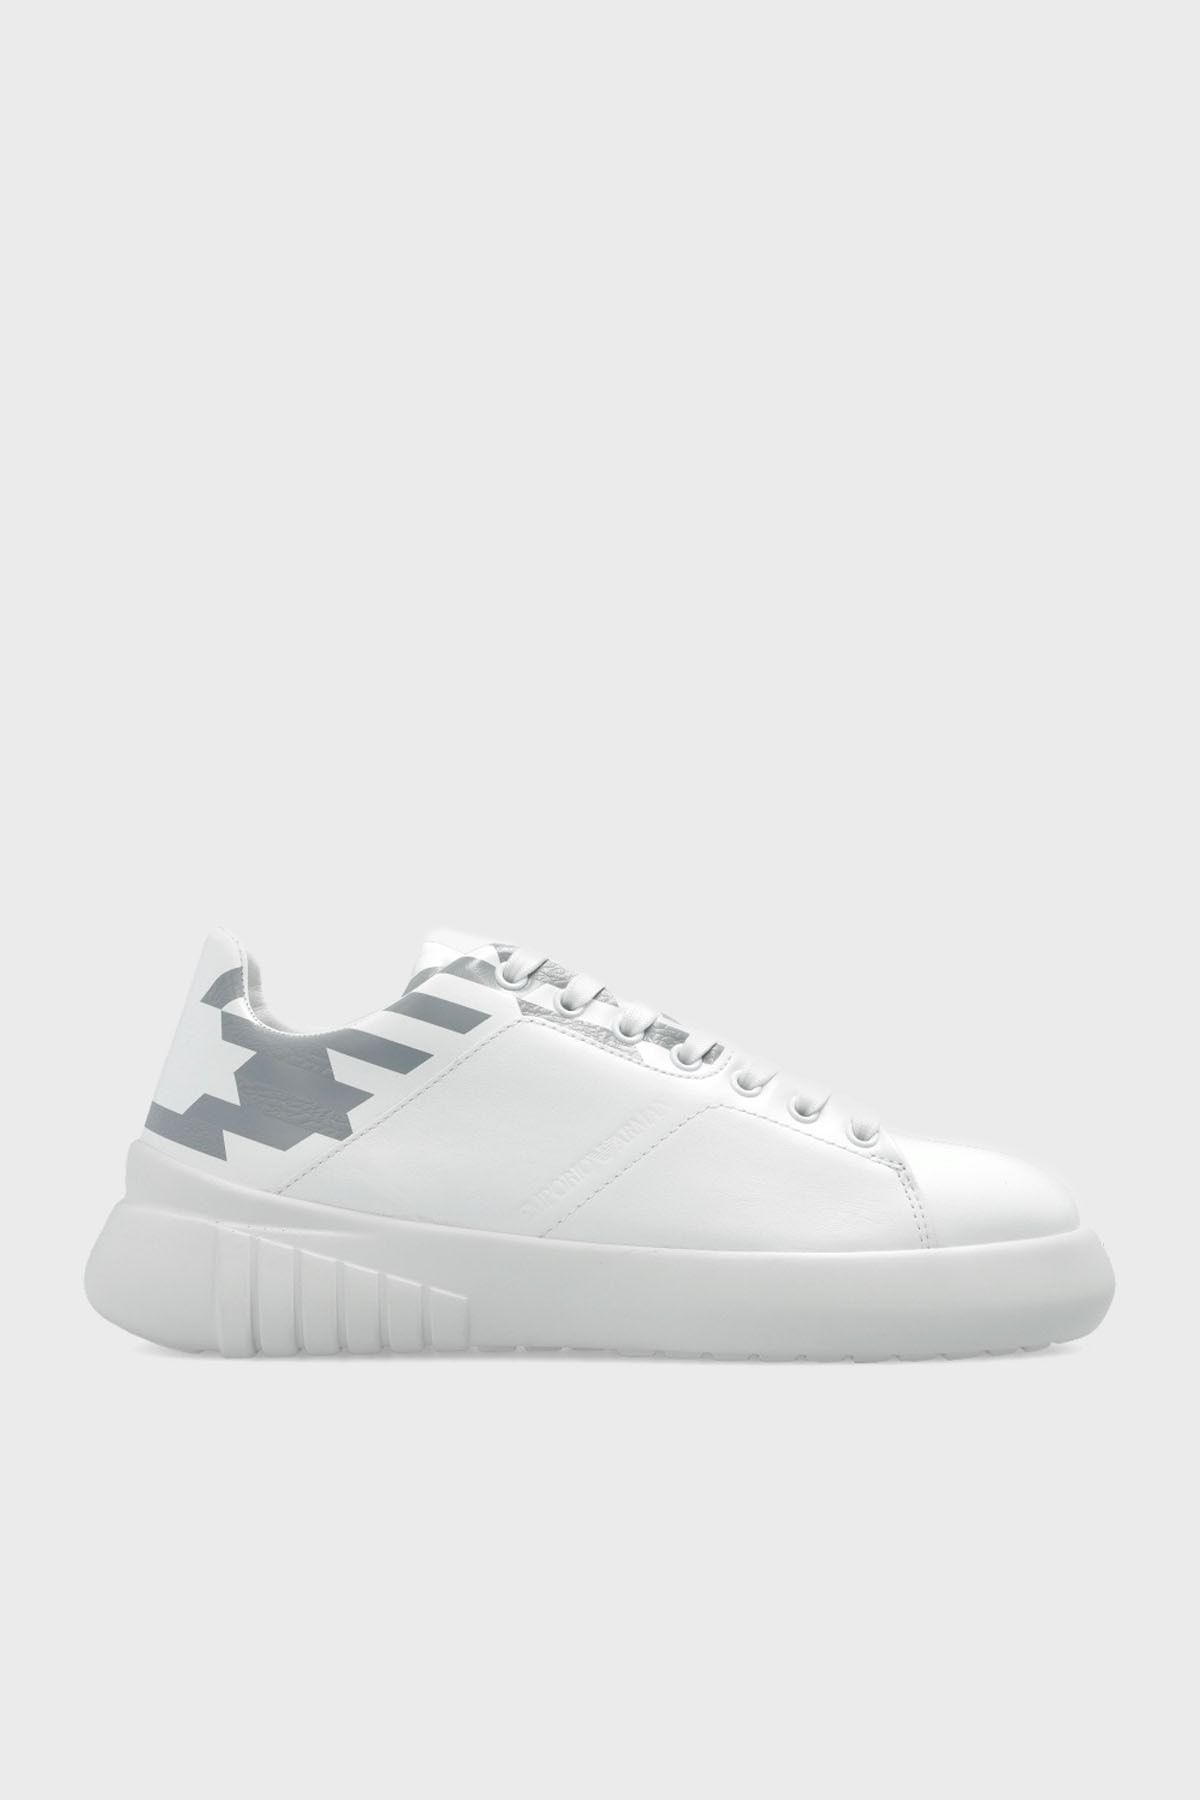 Emporio Armani Deri Sneaker Ayakkabı Ayakkabı X3x164 Xf706 S646